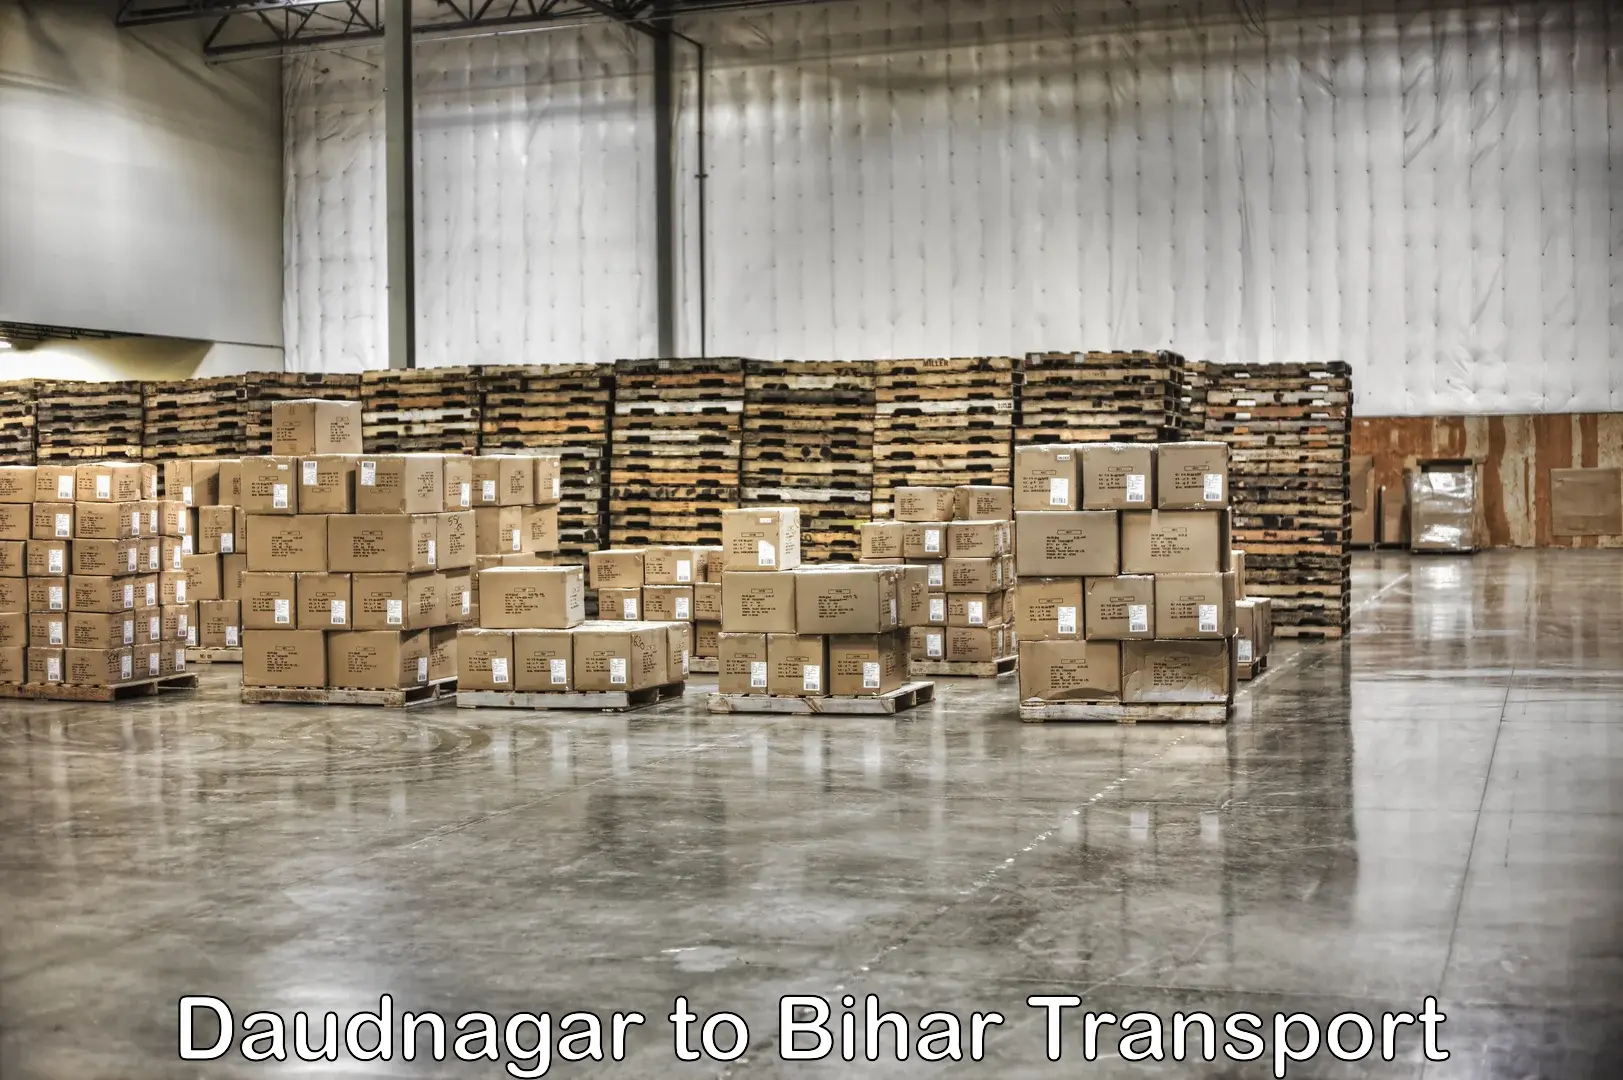 All India transport service Daudnagar to Deo Aurangabad